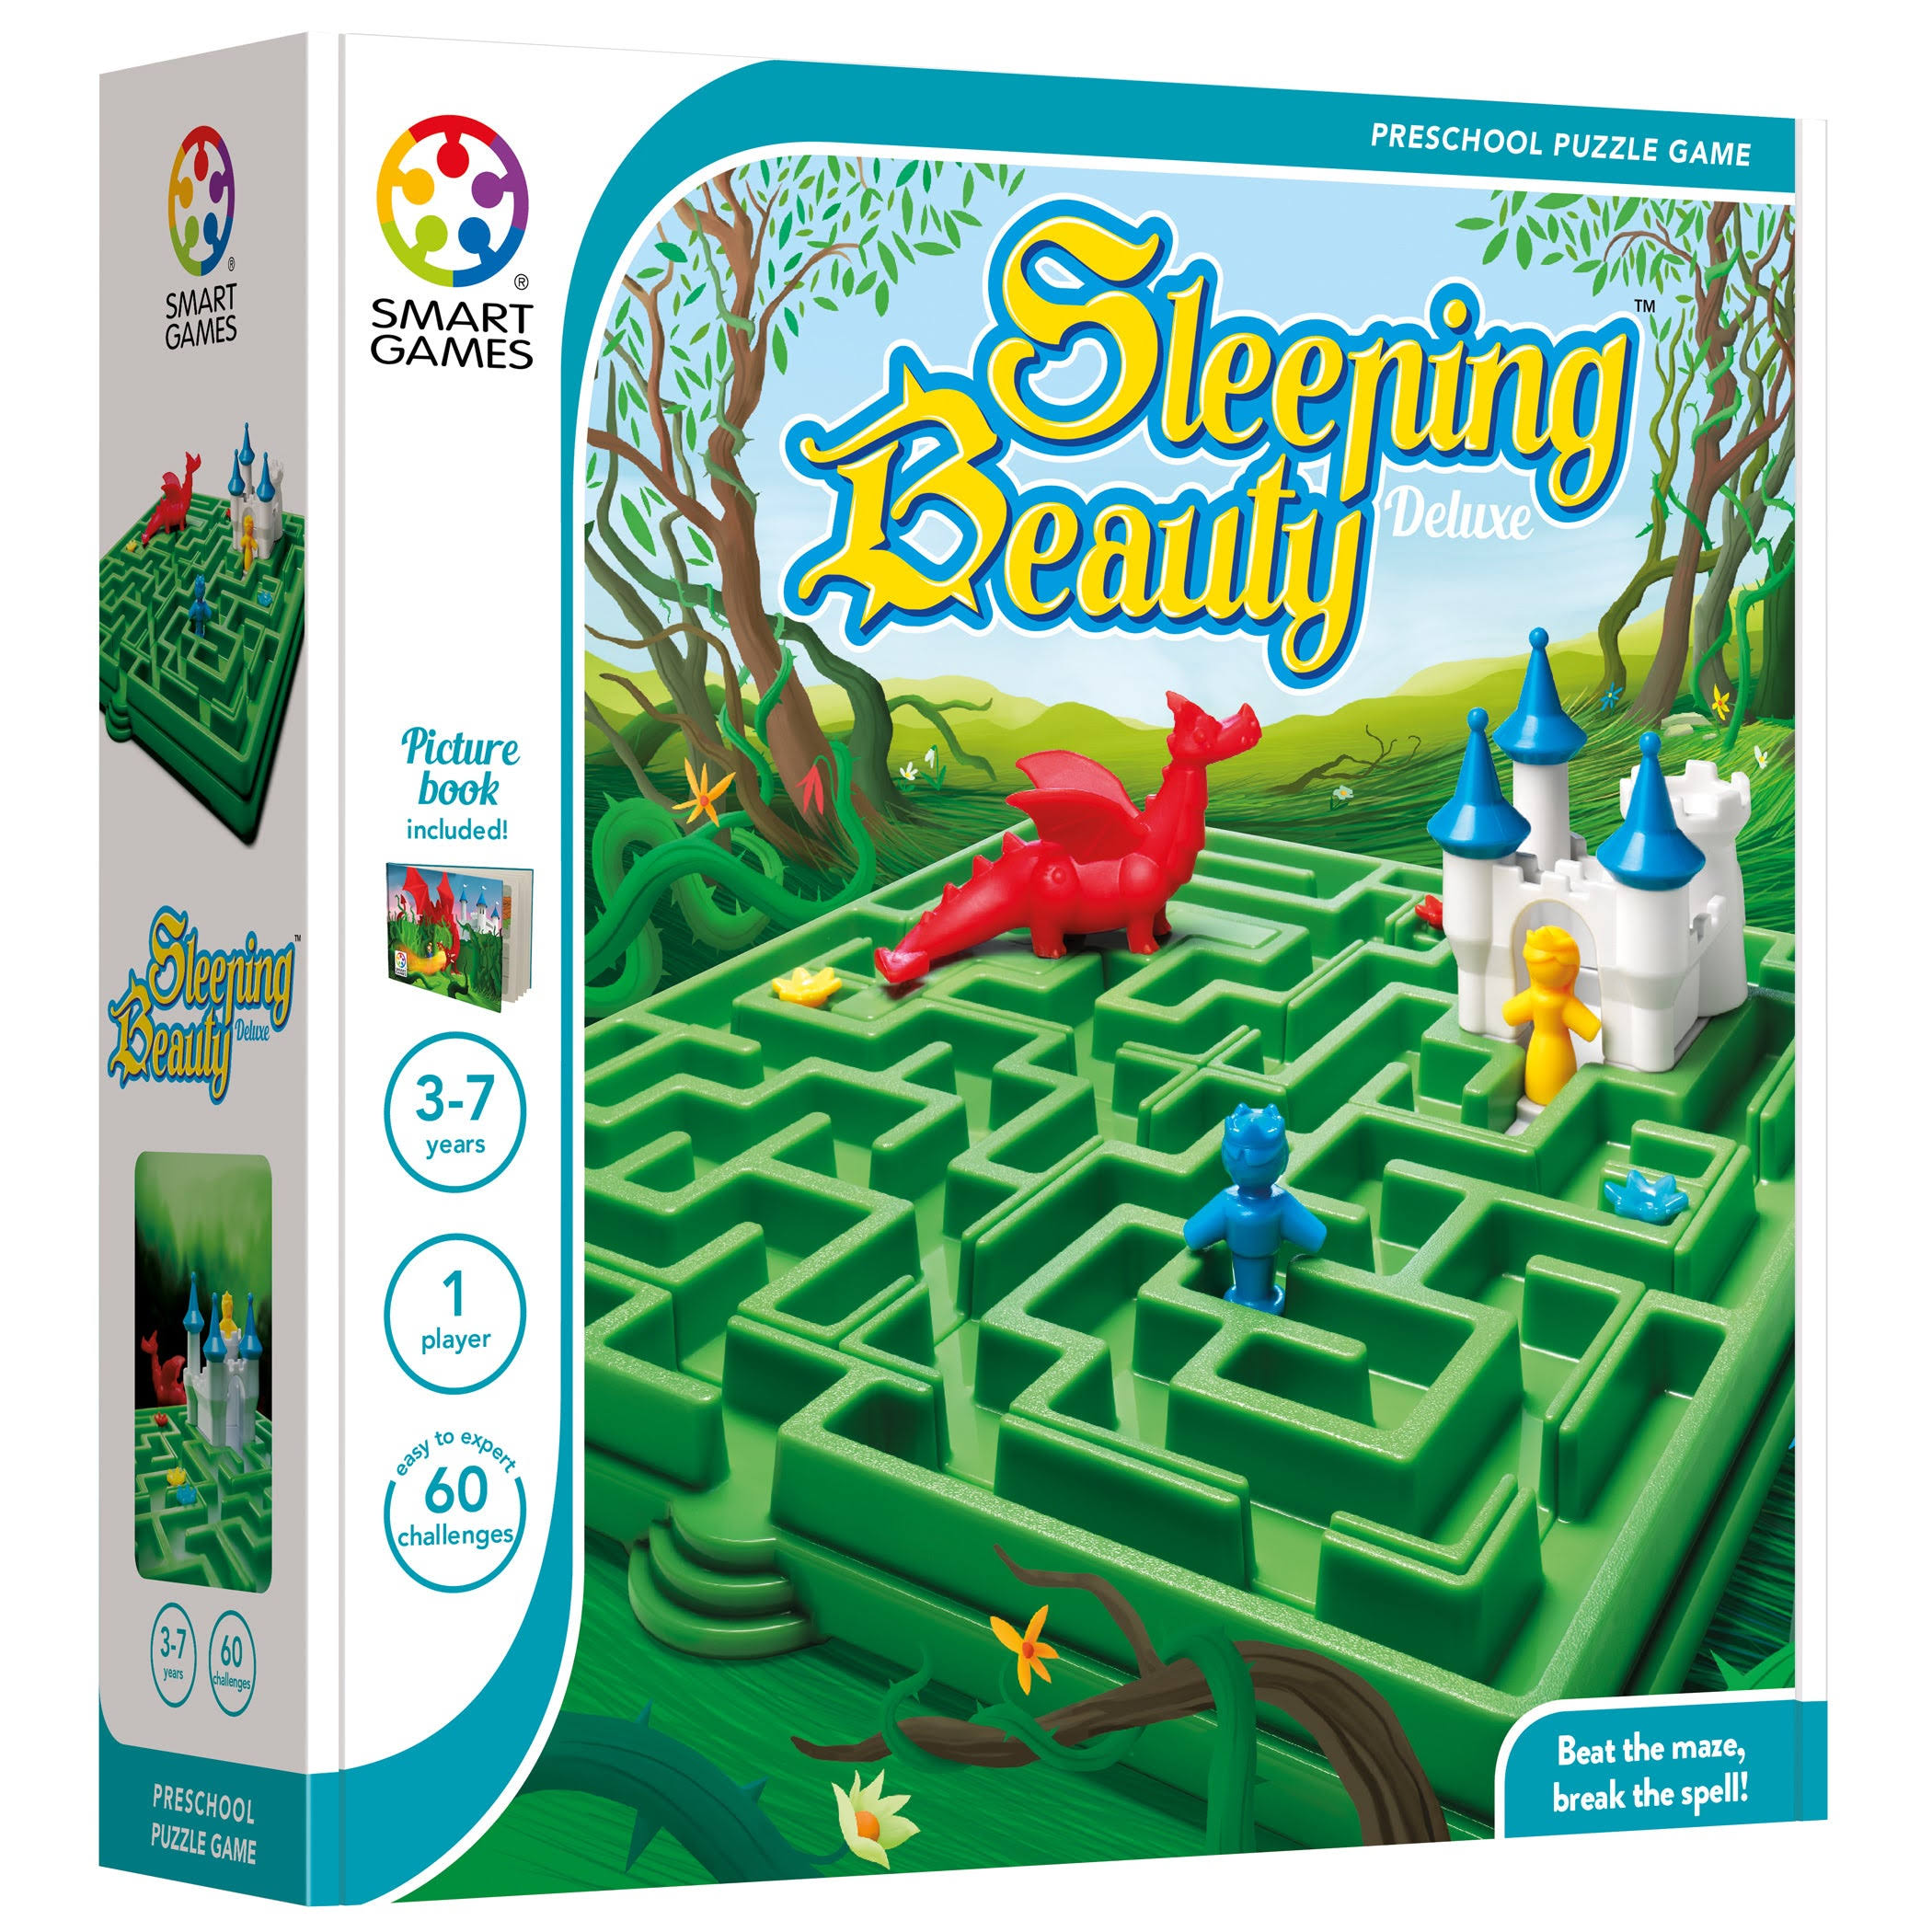 Sleeping Beauty Deluxe Preschool Puzzle Game